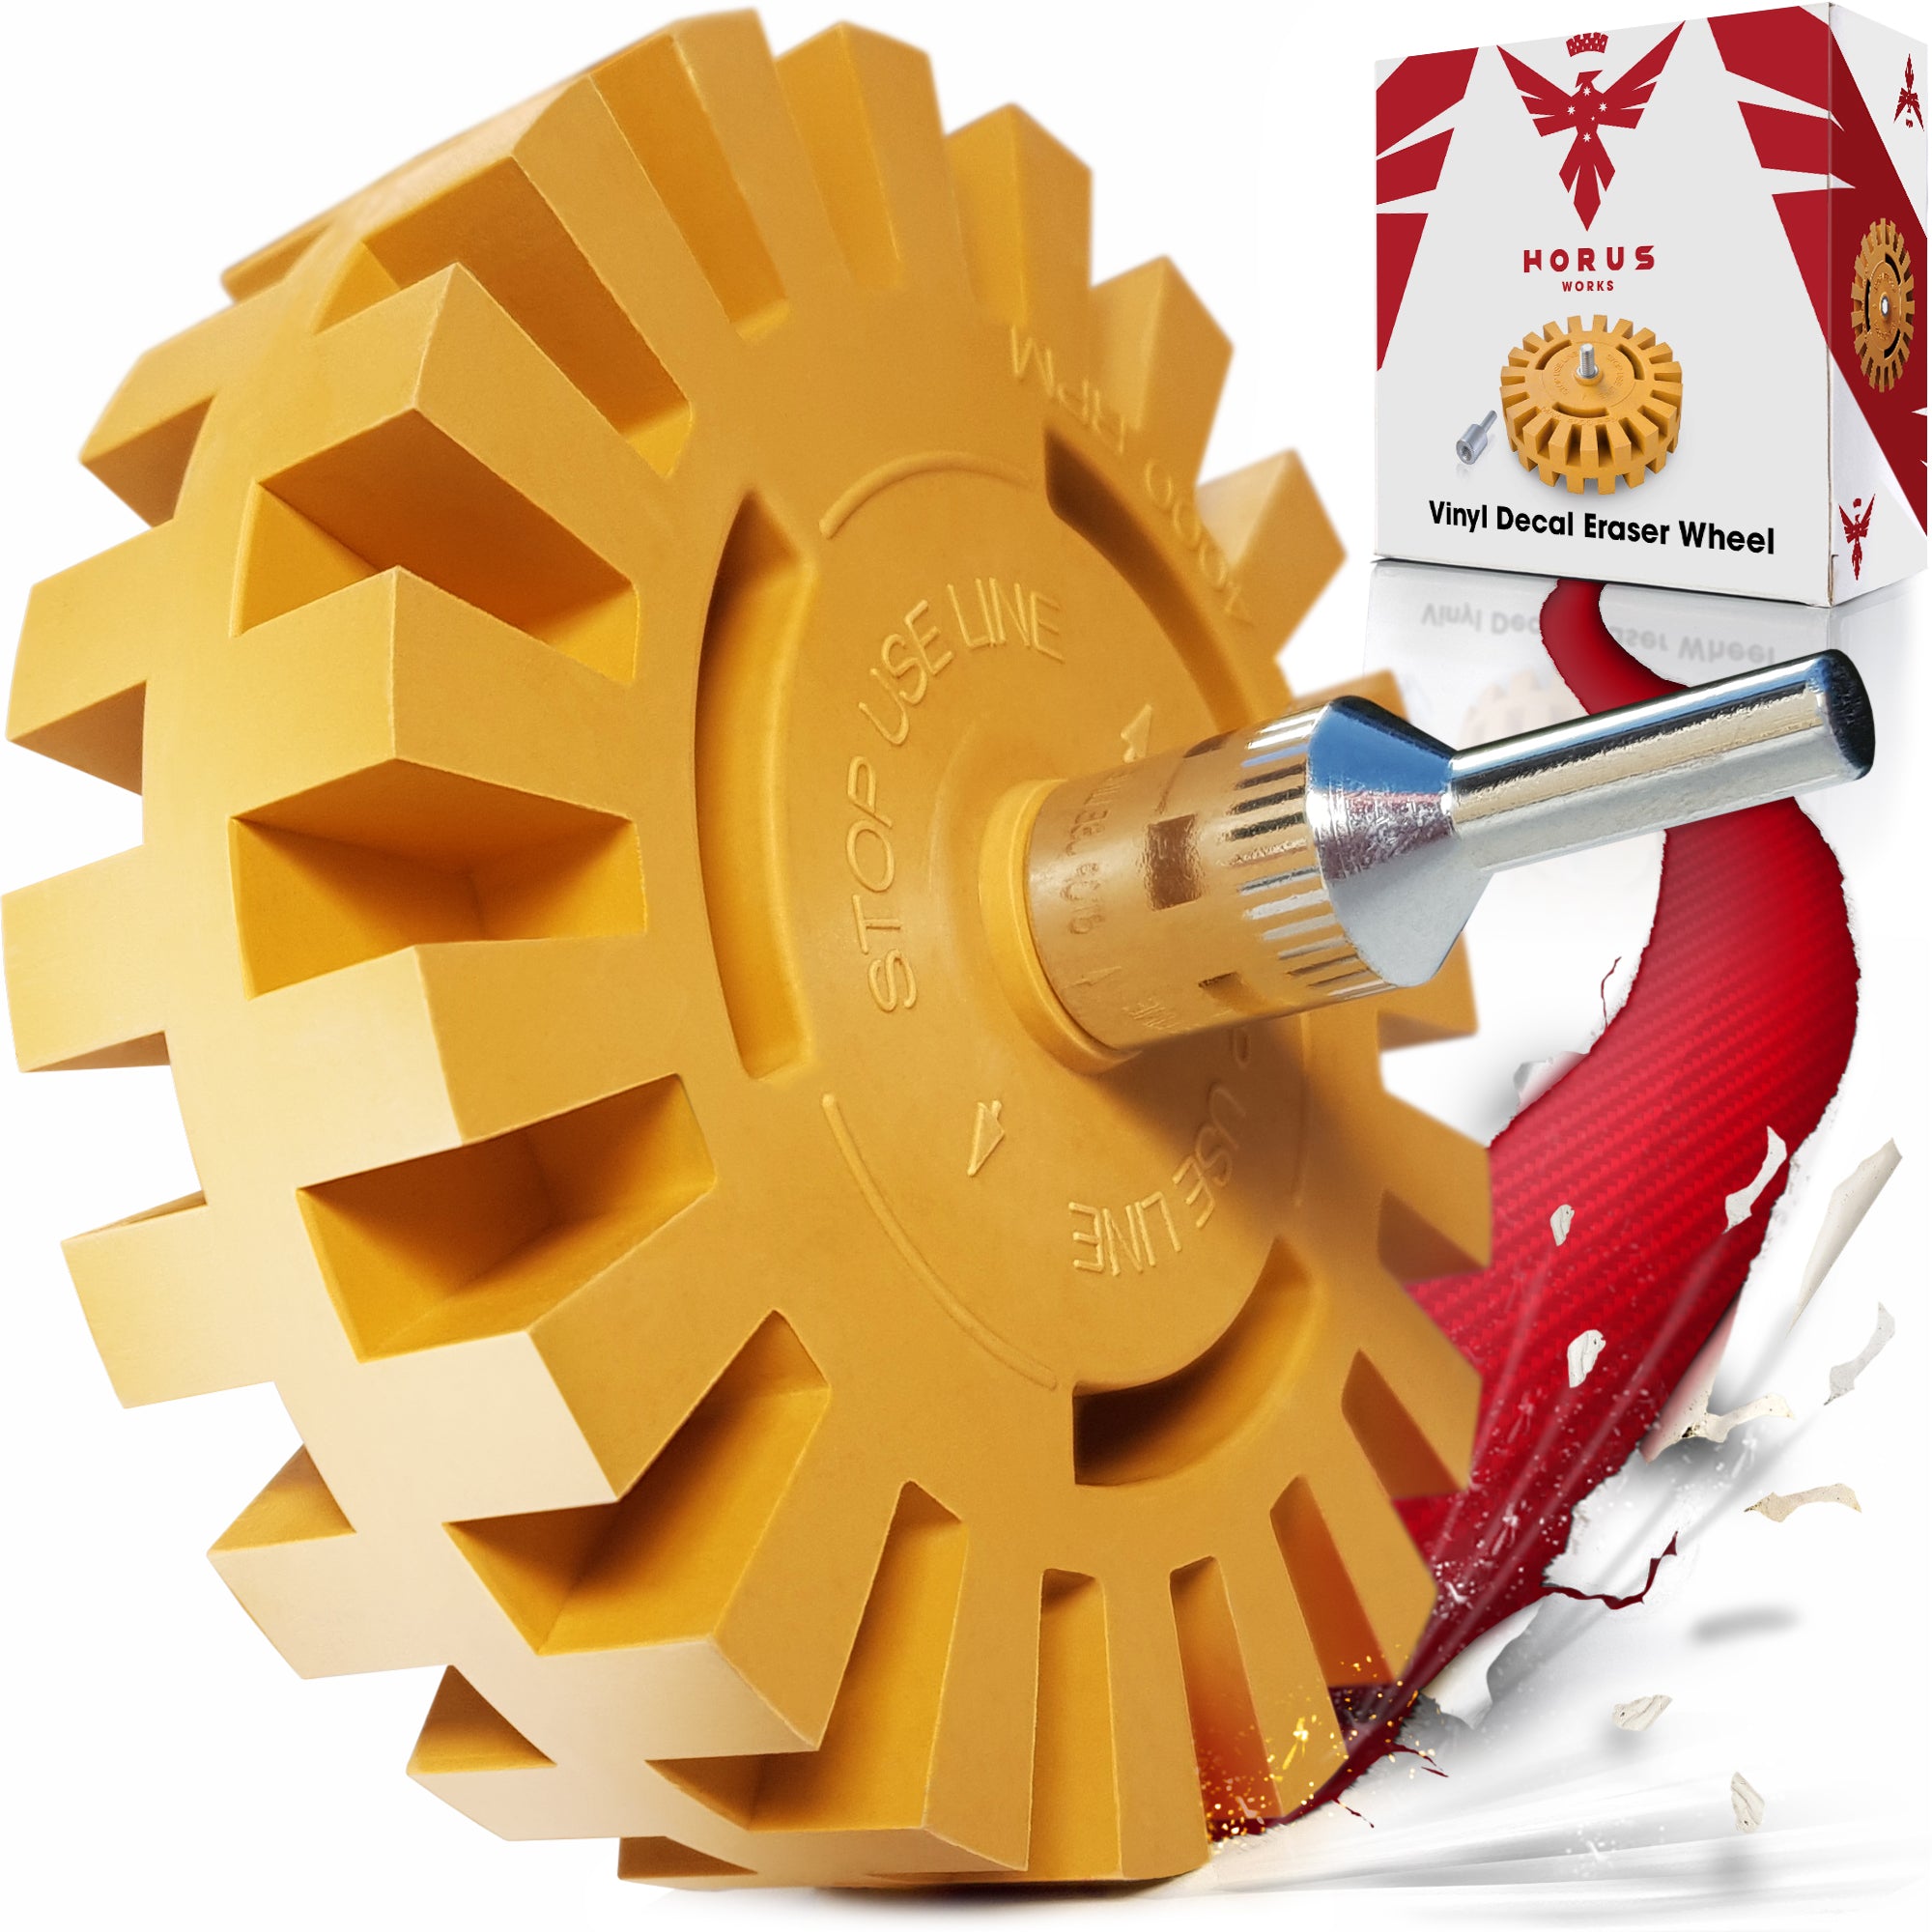 Follex Decal Eraser Wheel